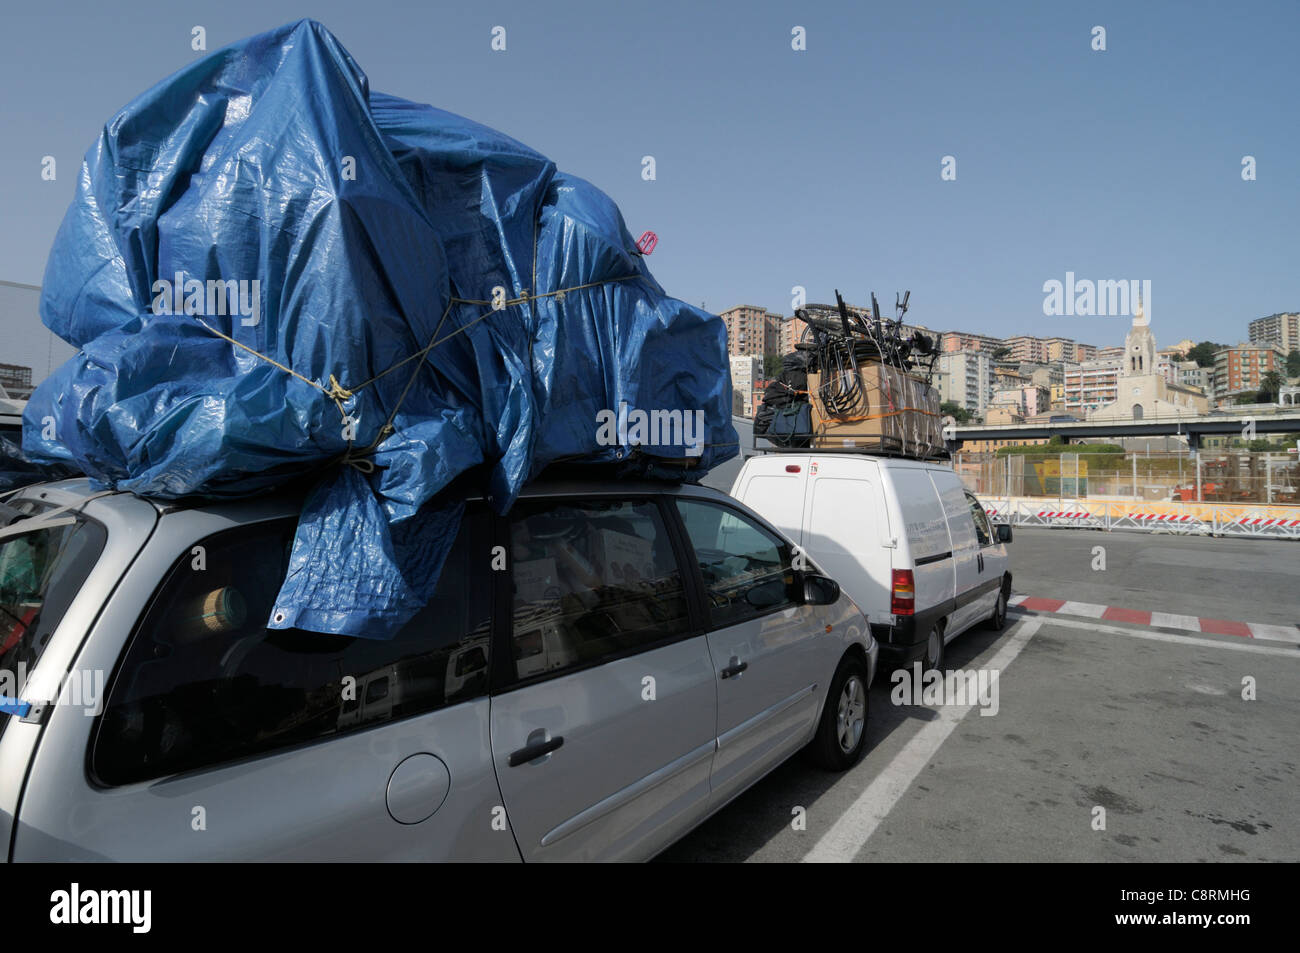 L'Europa, Italia, Genova. Sovraccarico di automobili nel porto di Genova in attesa di salire a bordo del traghetto da Genova a Tunisi in Tunisia. Foto Stock